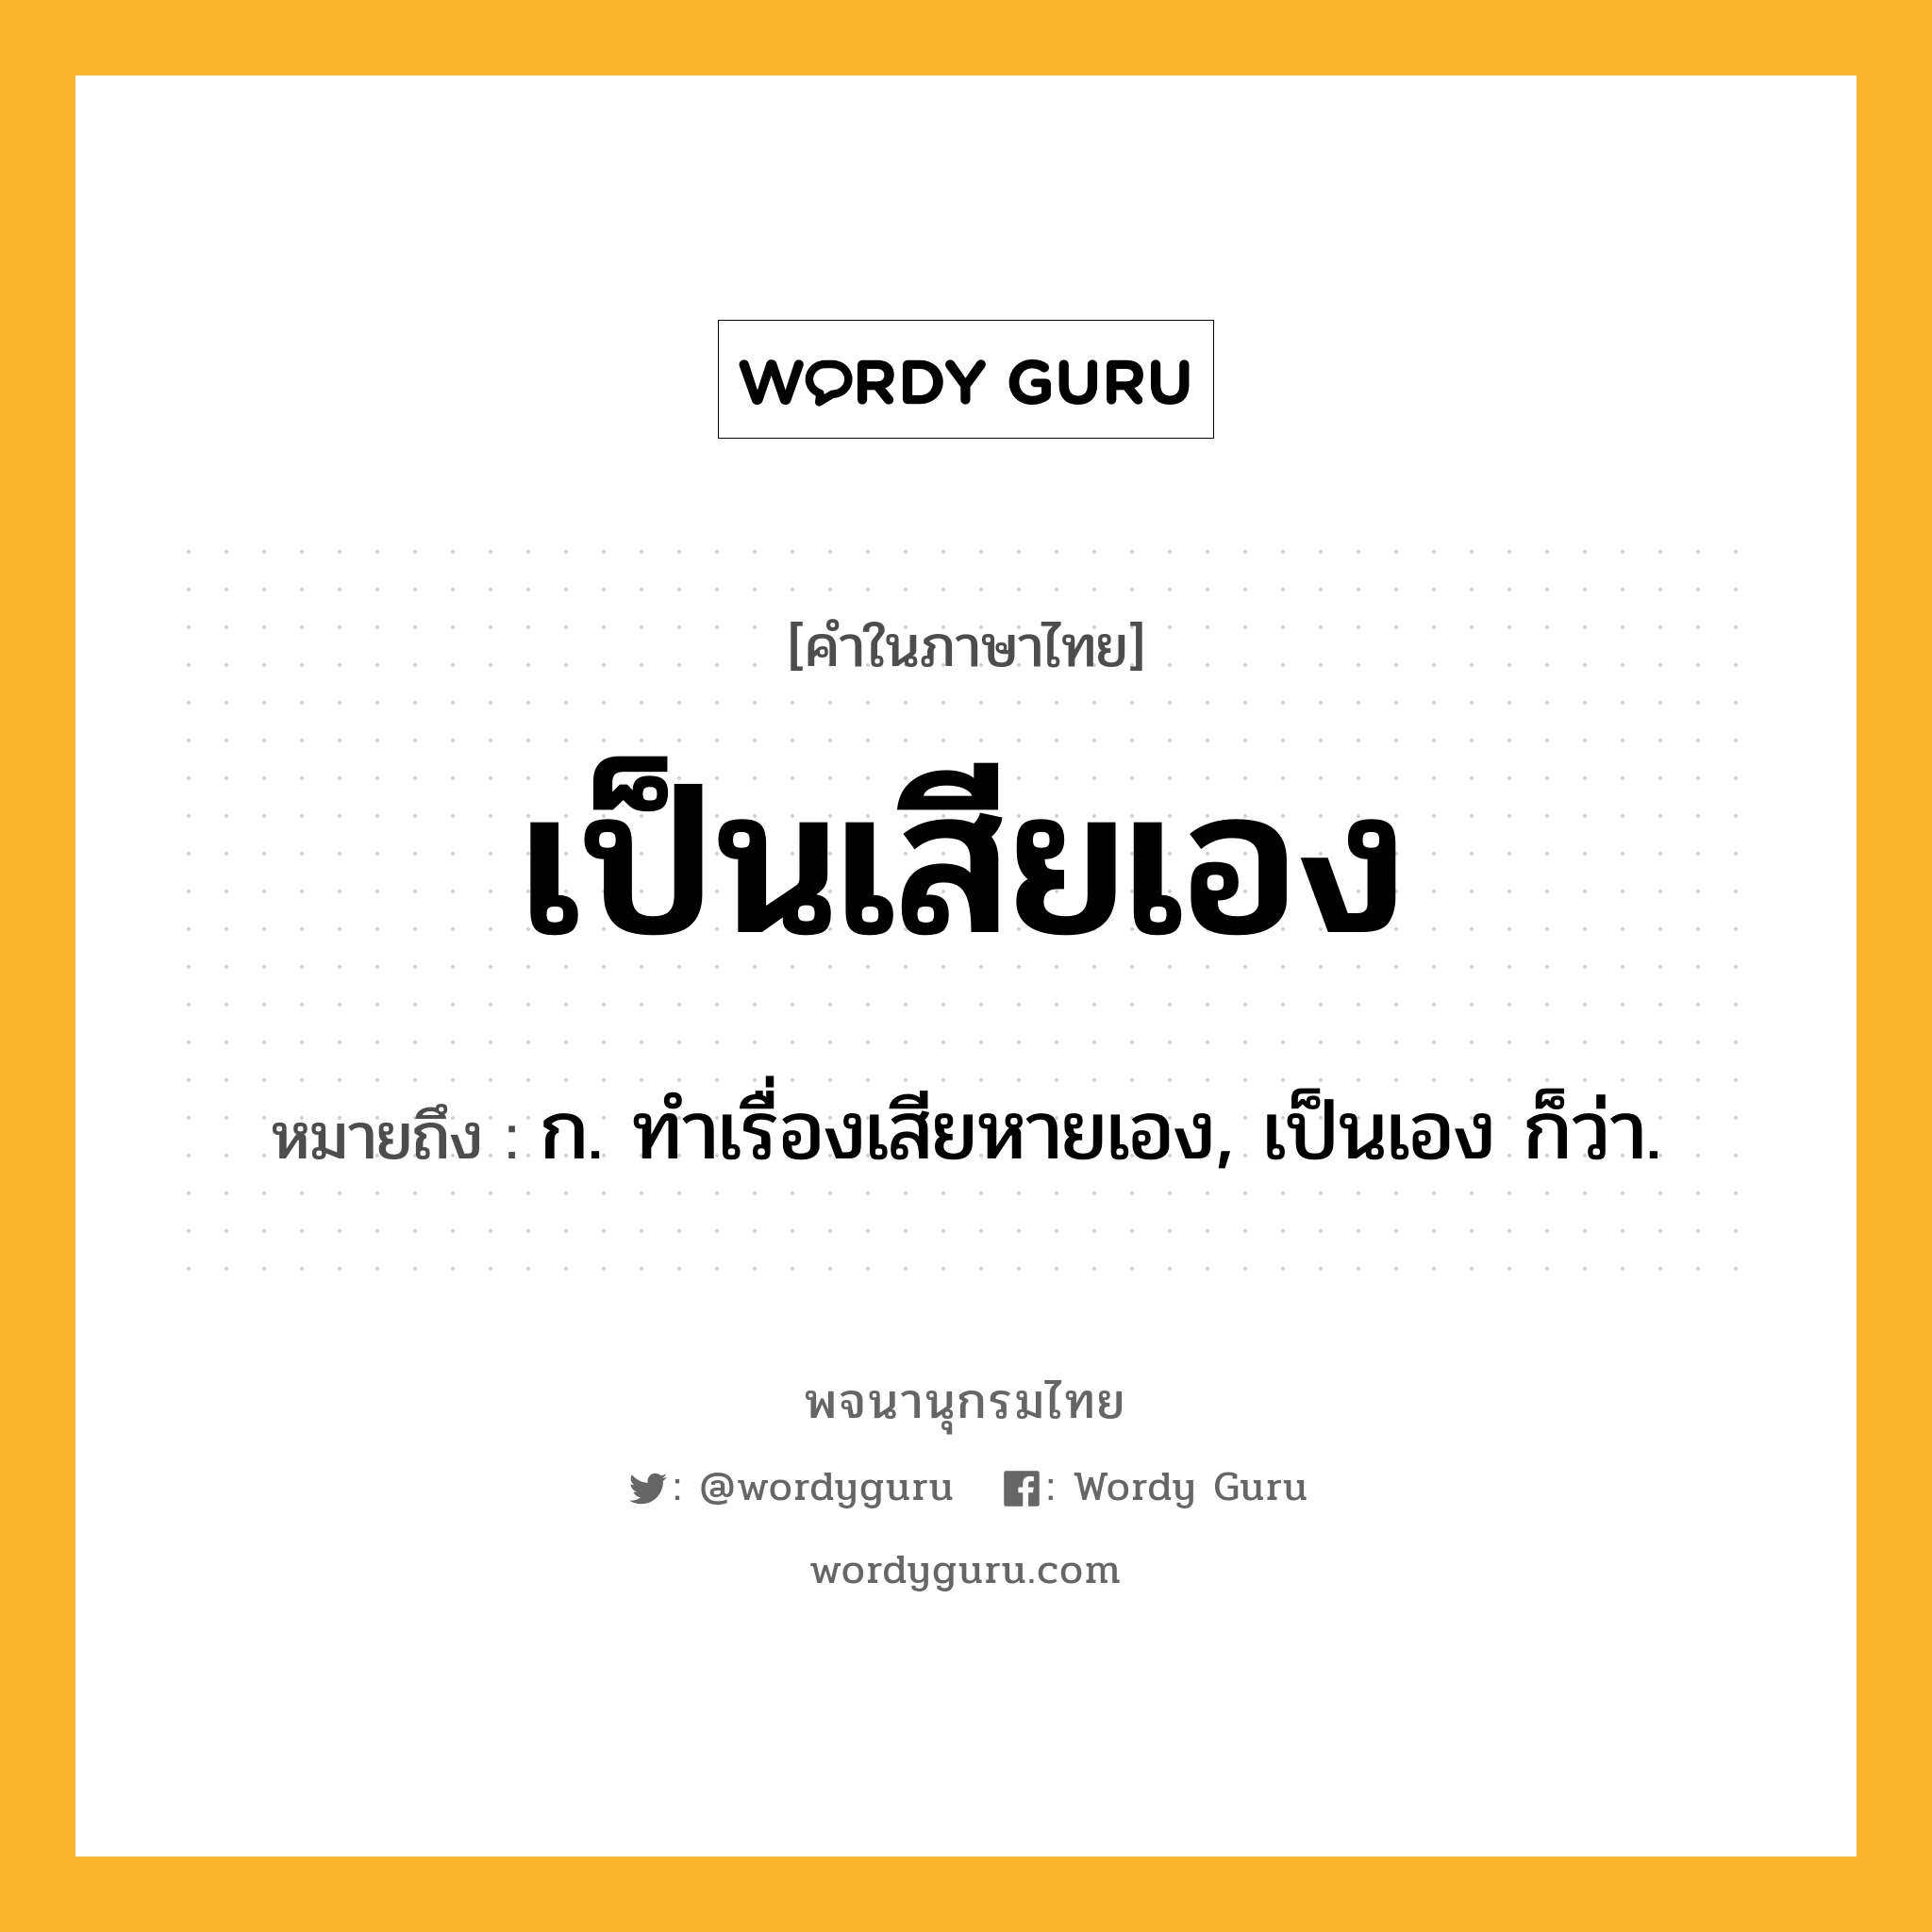 เป็นเสียเอง หมายถึงอะไร?, คำในภาษาไทย เป็นเสียเอง หมายถึง ก. ทำเรื่องเสียหายเอง, เป็นเอง ก็ว่า.